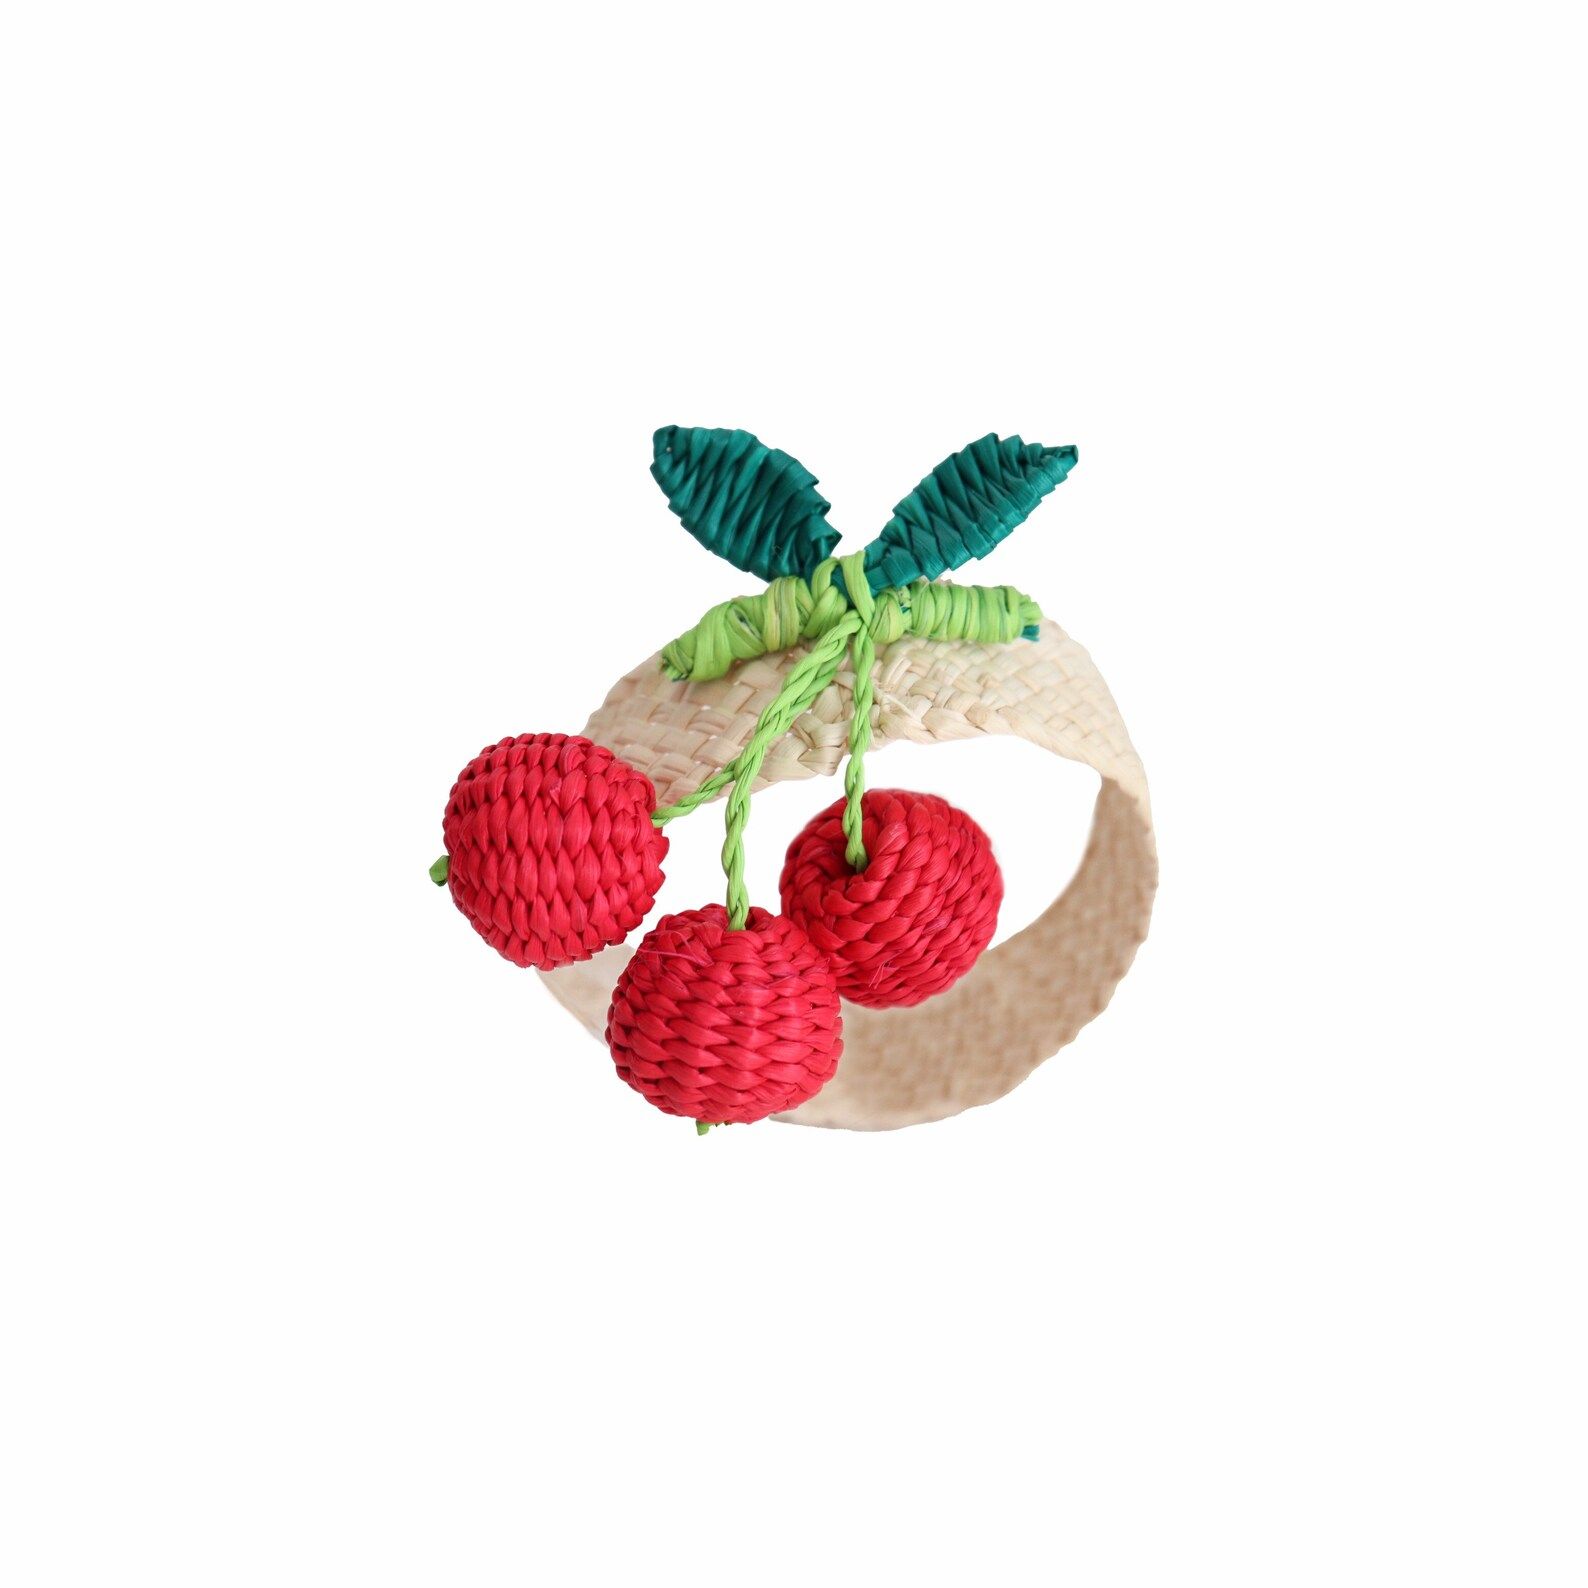 Iraca/straw Napkin Ring Ref: Fruits | Etsy | Etsy (US)